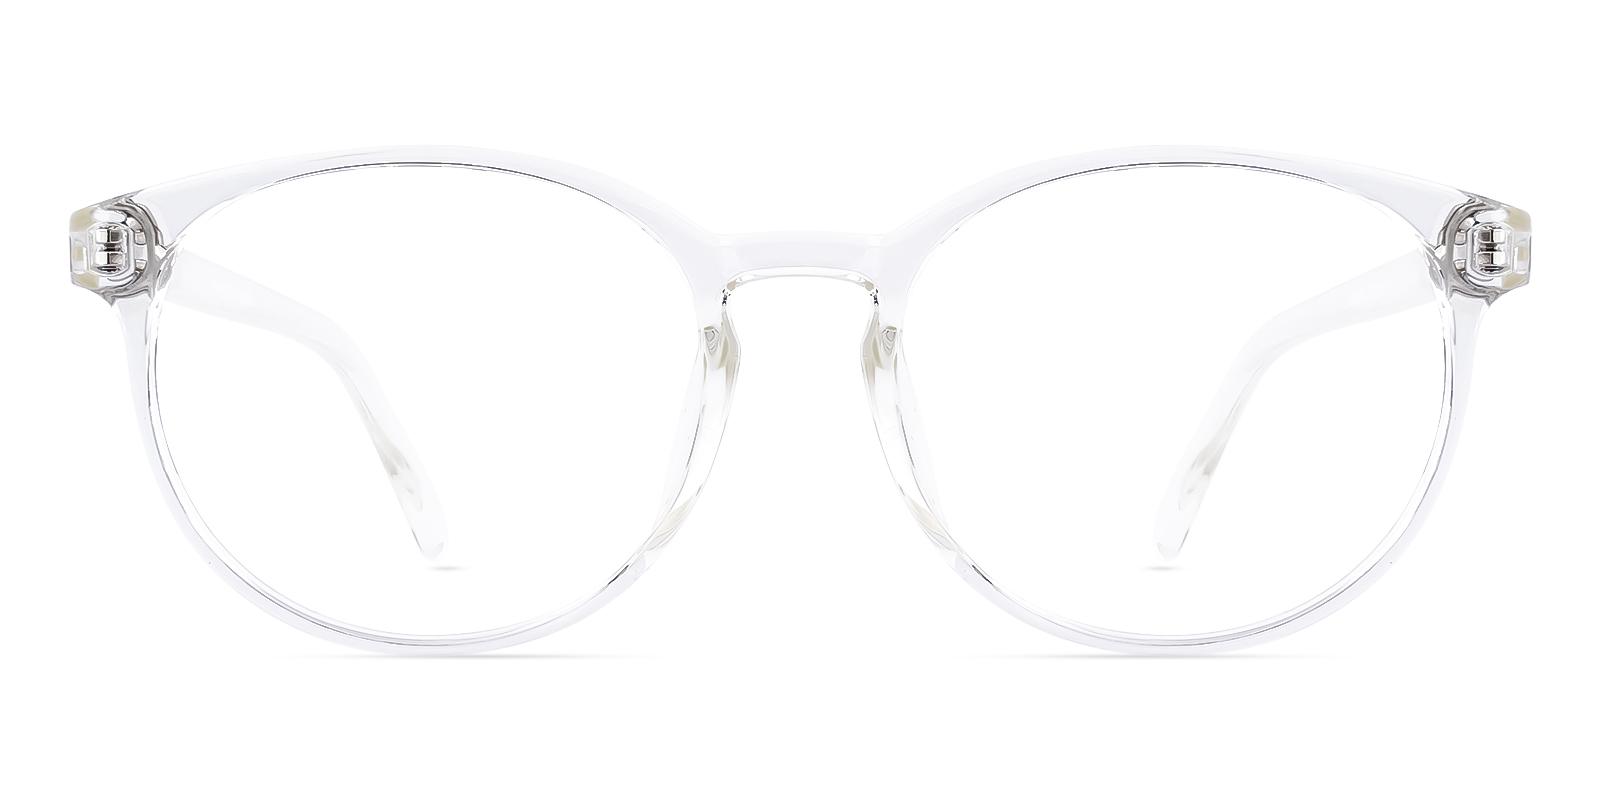 Crucile Fclear Plastic Eyeglasses , UniversalBridgeFit Frames from ABBE Glasses